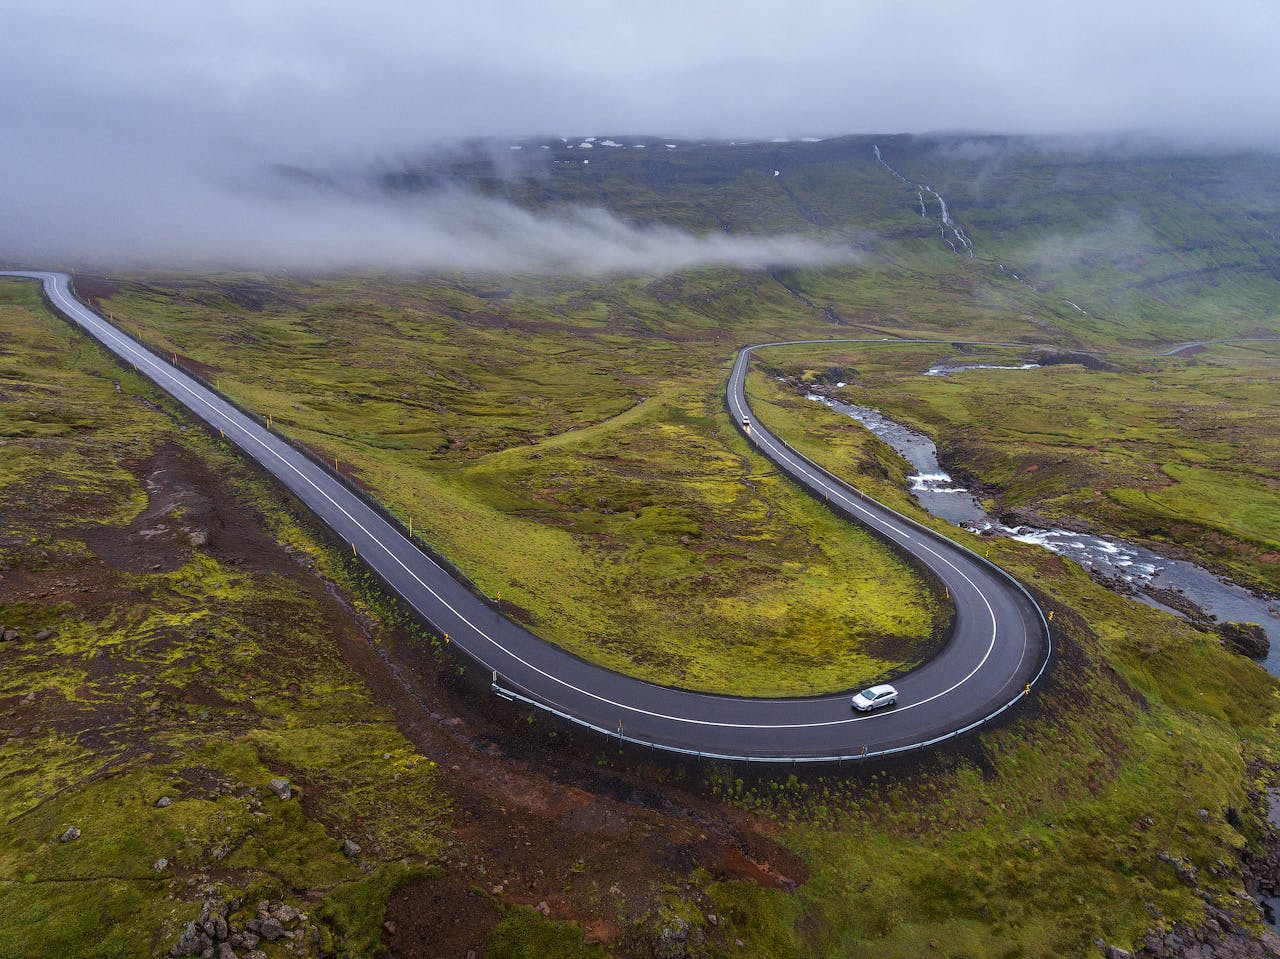 Kręte fiordy we wschodniej Islandii zapewniają wspaniałe wrażenia z samodzielnej jazdy.